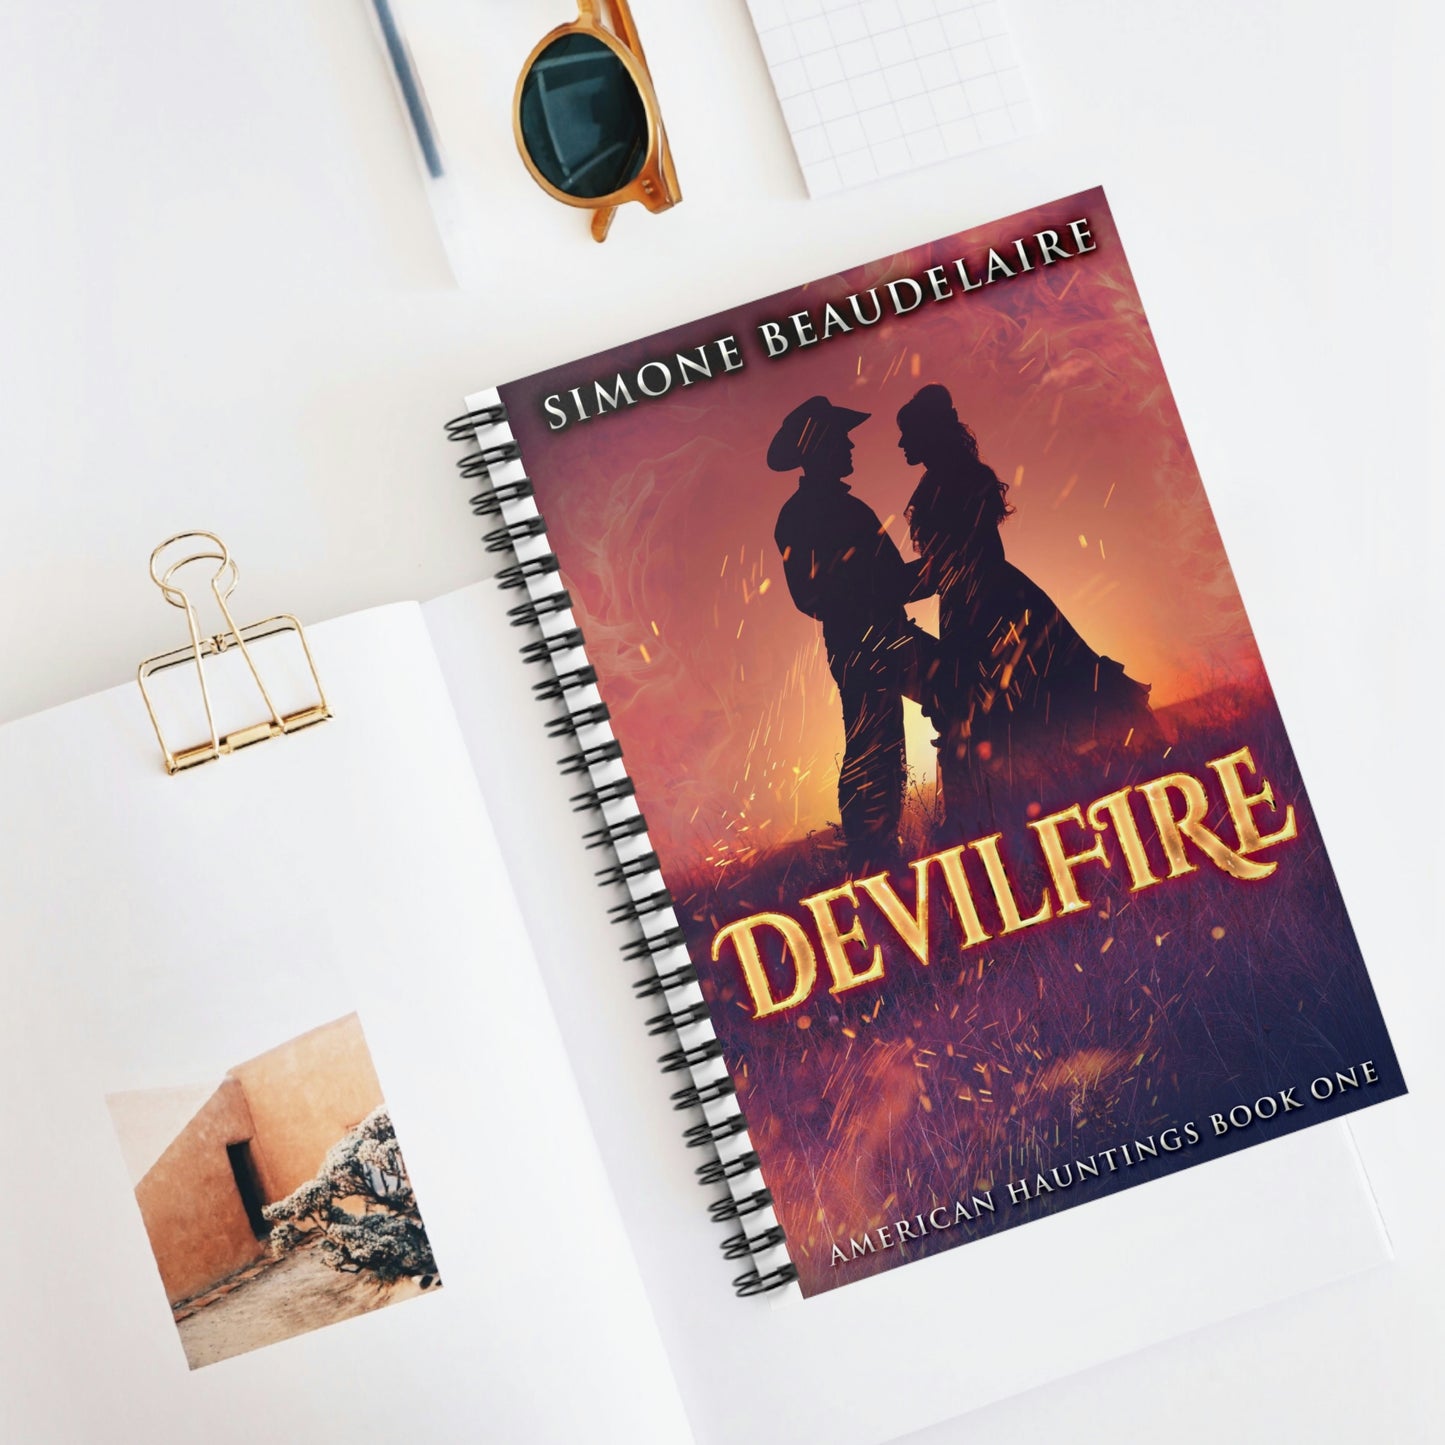 Devilfire - Spiral Notebook